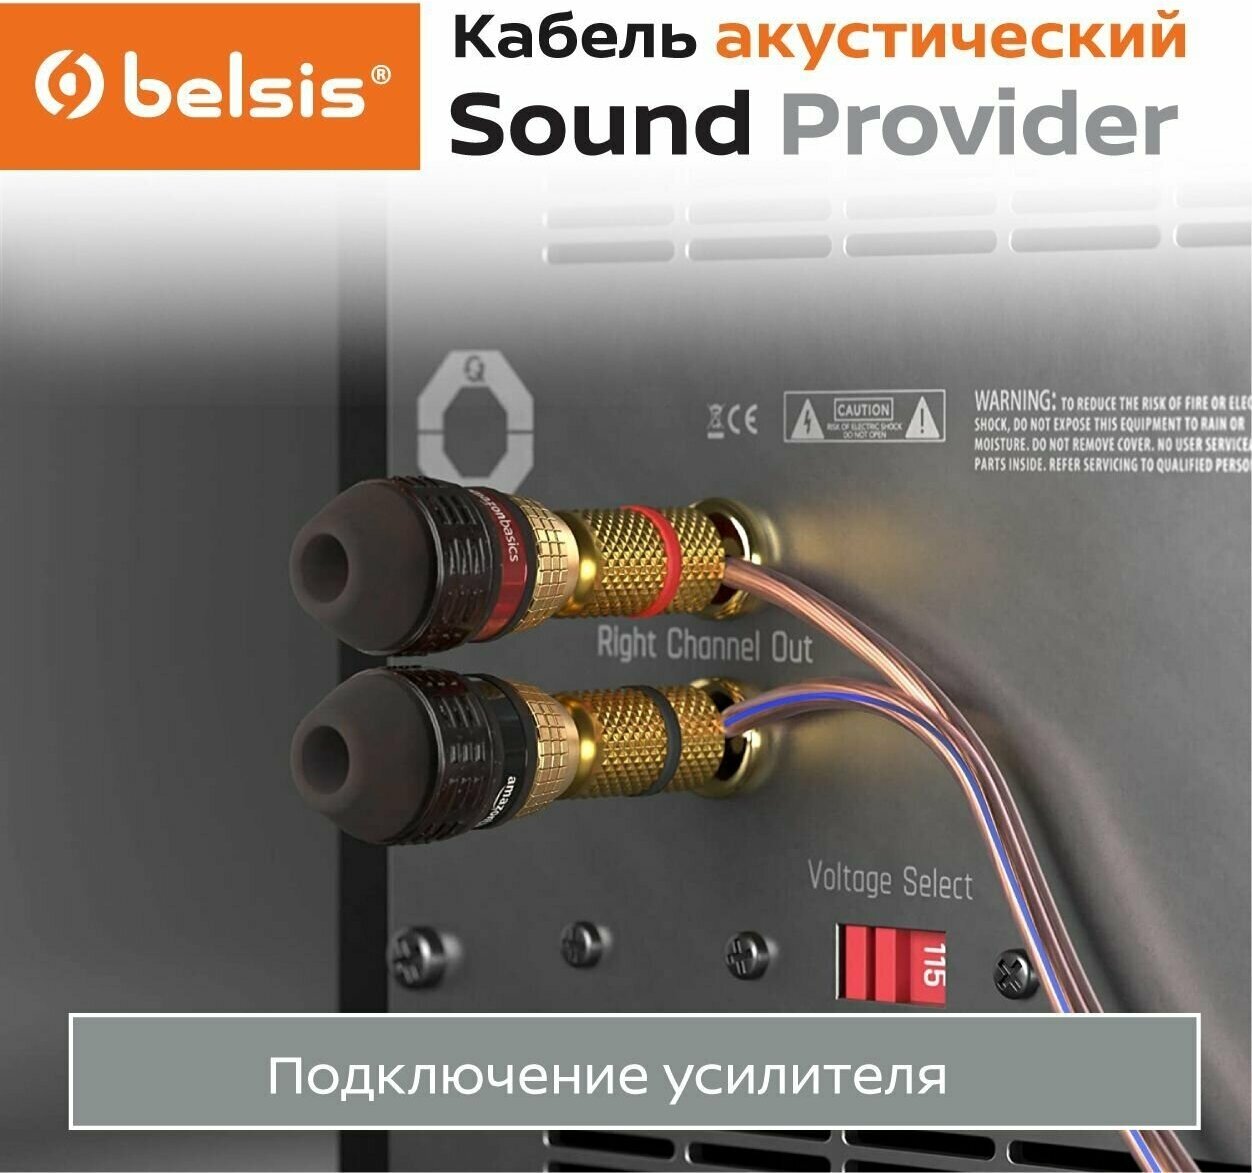 Акустический кабель Belsis CCA 2х0,5 мм2, прозрачный, 15 м